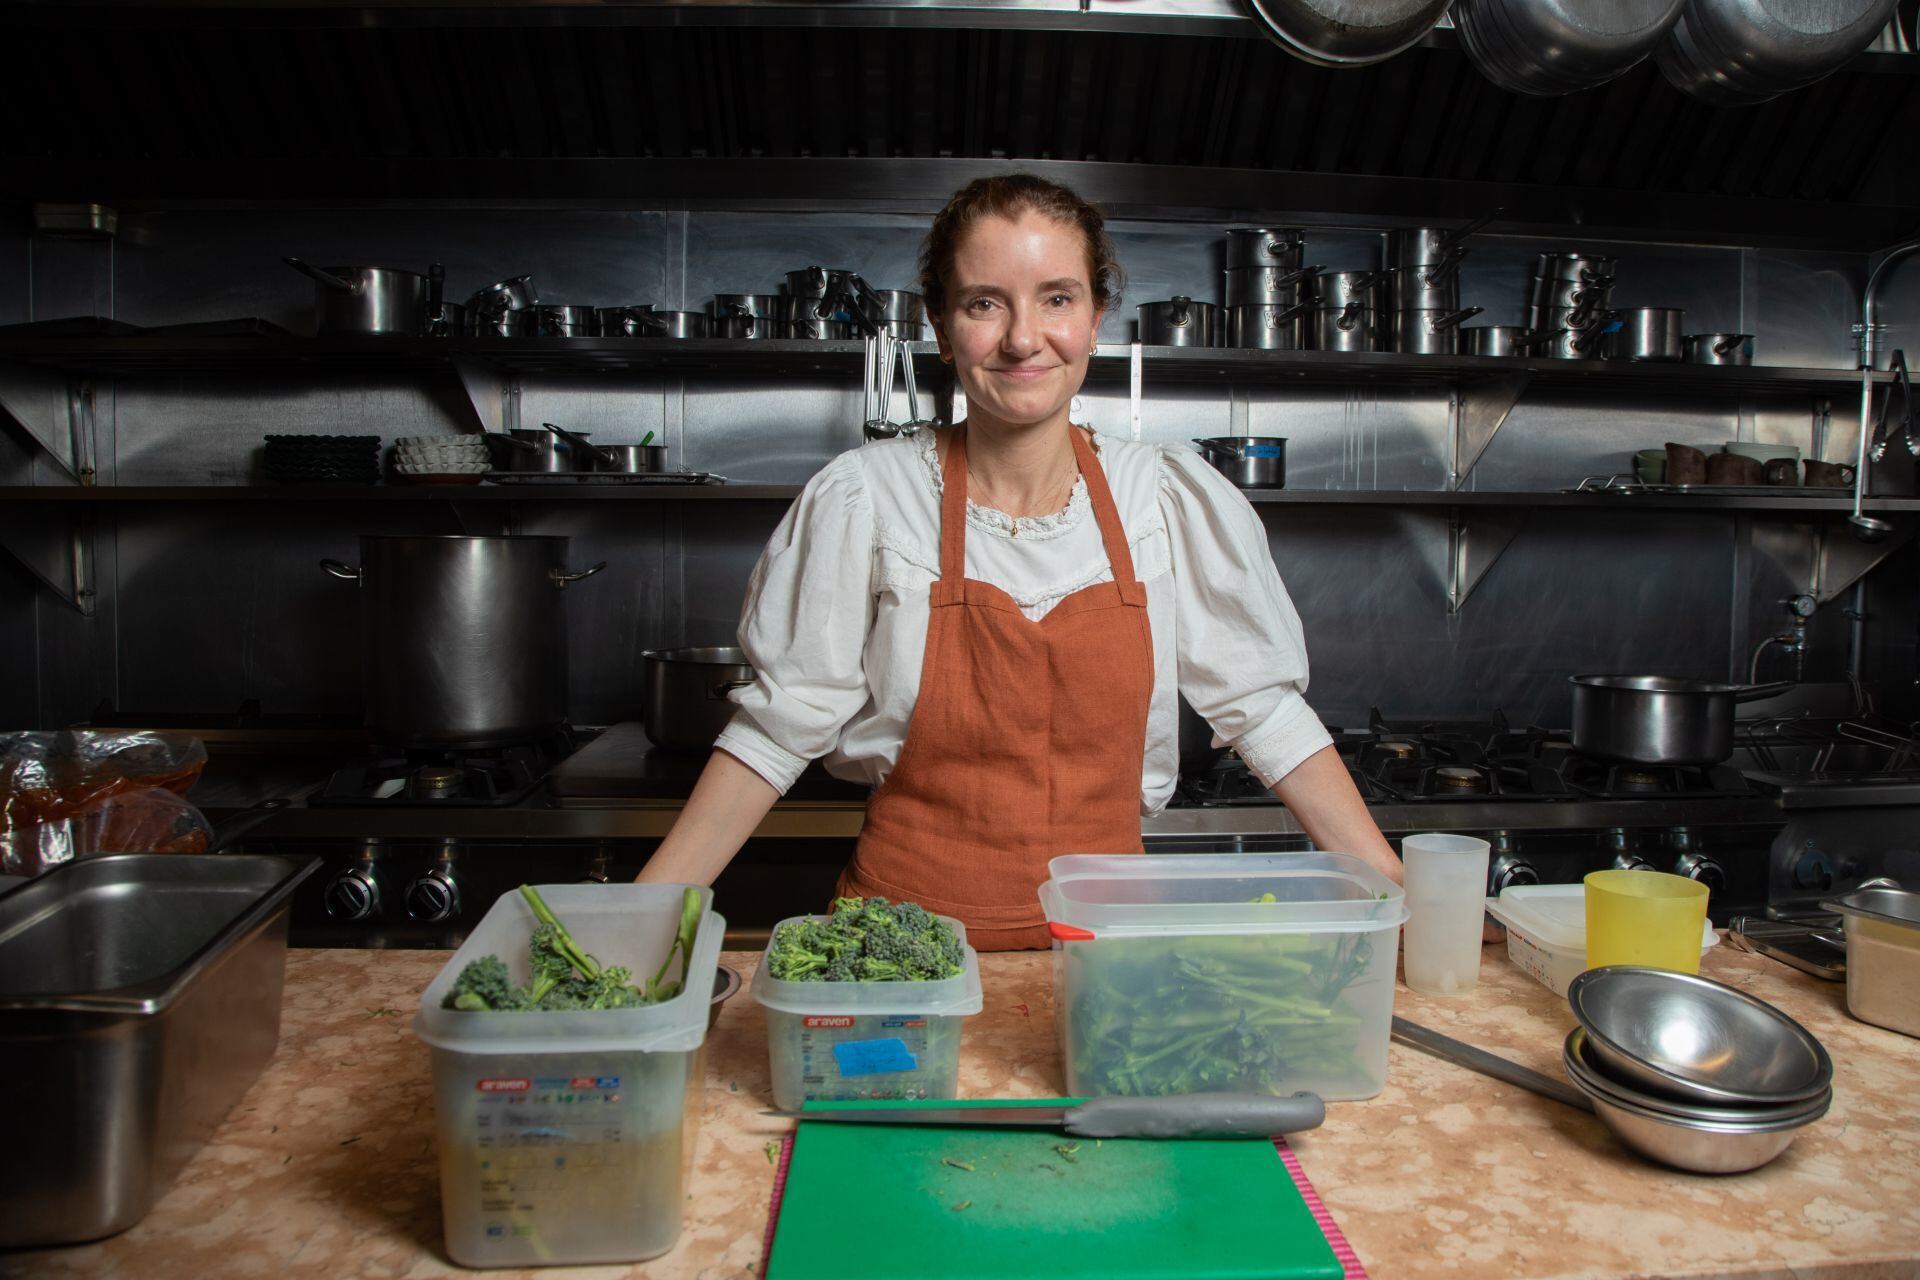 La chef mexicana Elena Reygadas, ganadora de distintos premios internacionales, con diversos restaurantes a su cargo durante su carrera y con el restaurante Rosetta como plaza insignia de su estilo culinario, fue nombrada la Mejor Chef Femenina del Mundo